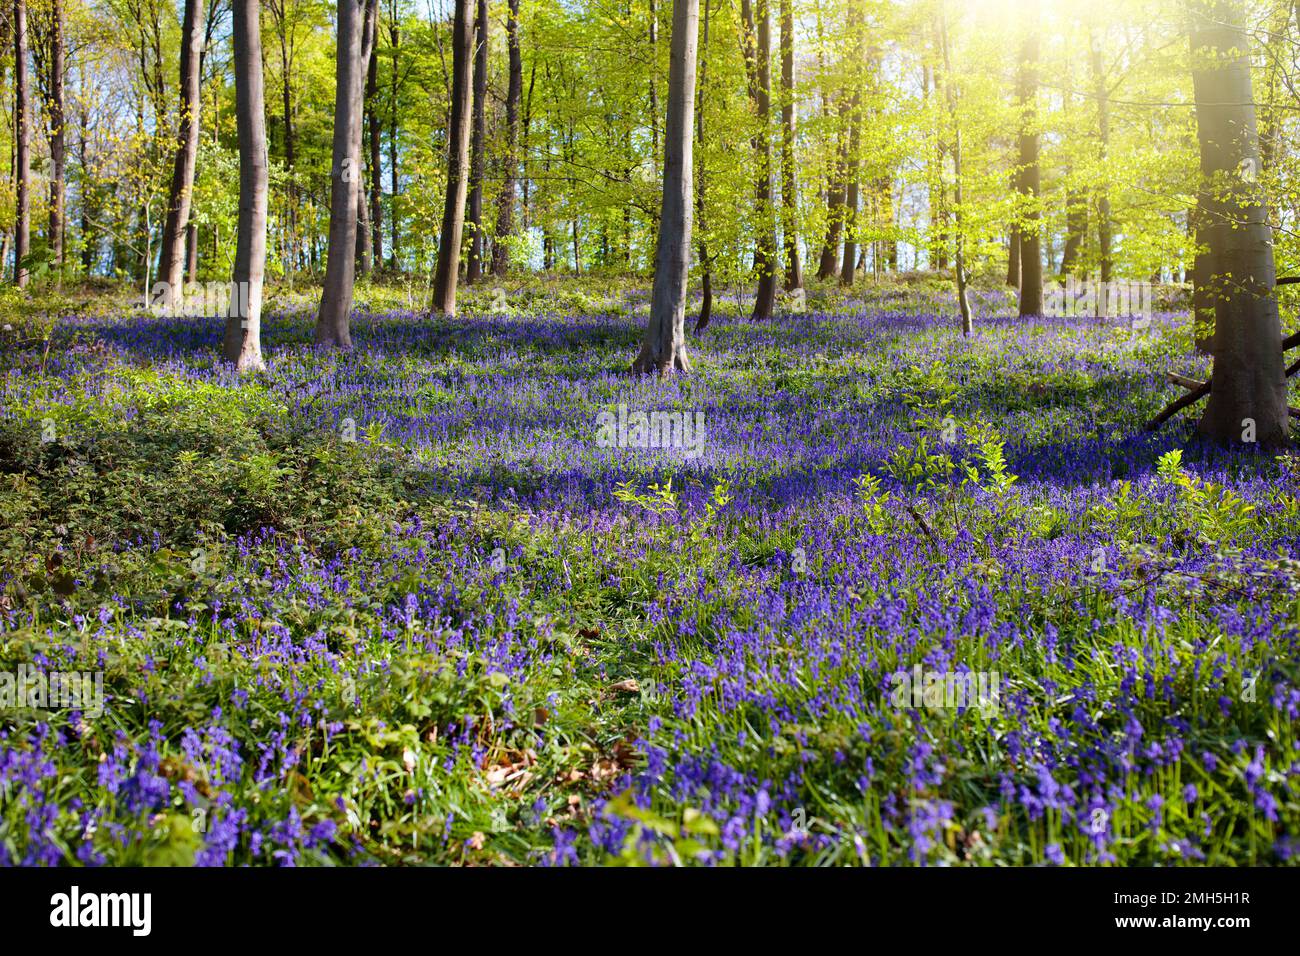 Bluebell Woods. Wunderschöne Landschaft mit Bluebell-Blumenwäldern am sonnigen Frühlingstag. Blühende blaue Glockenblumen auf der Wiese. Sonniger Wald mit Blauen Glocken. Stockfoto